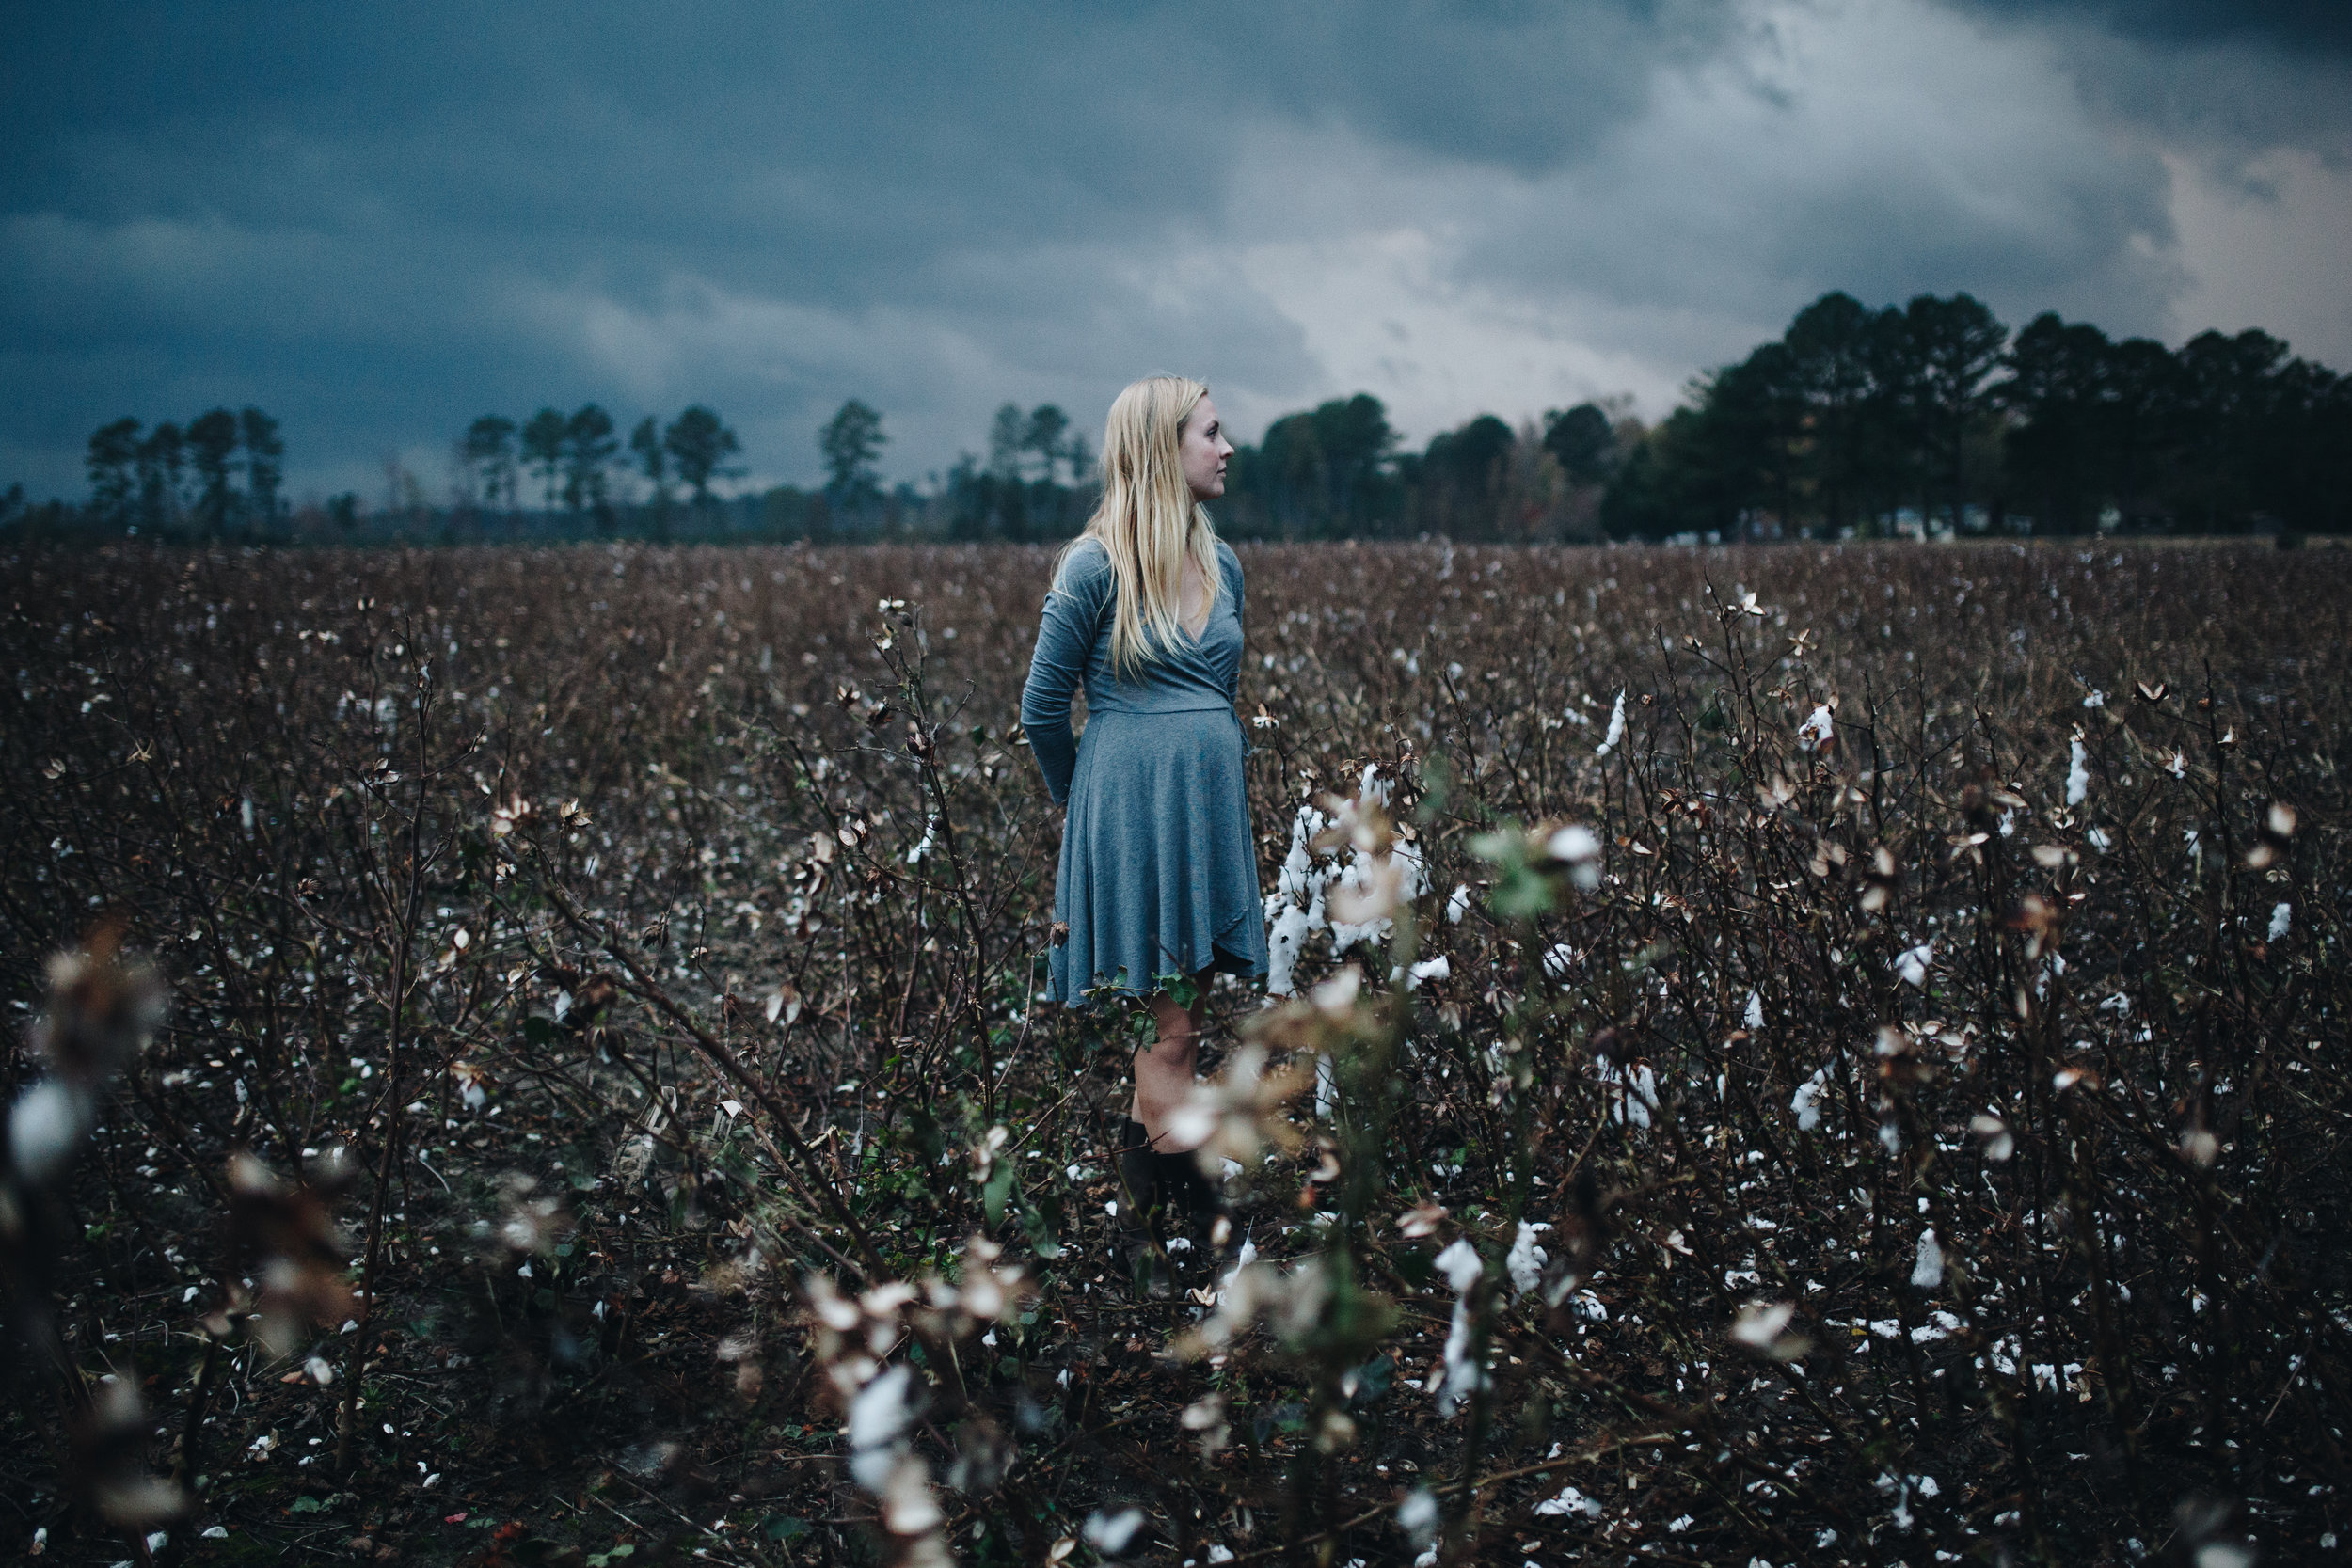 maddie-cotton-field-0784.jpg